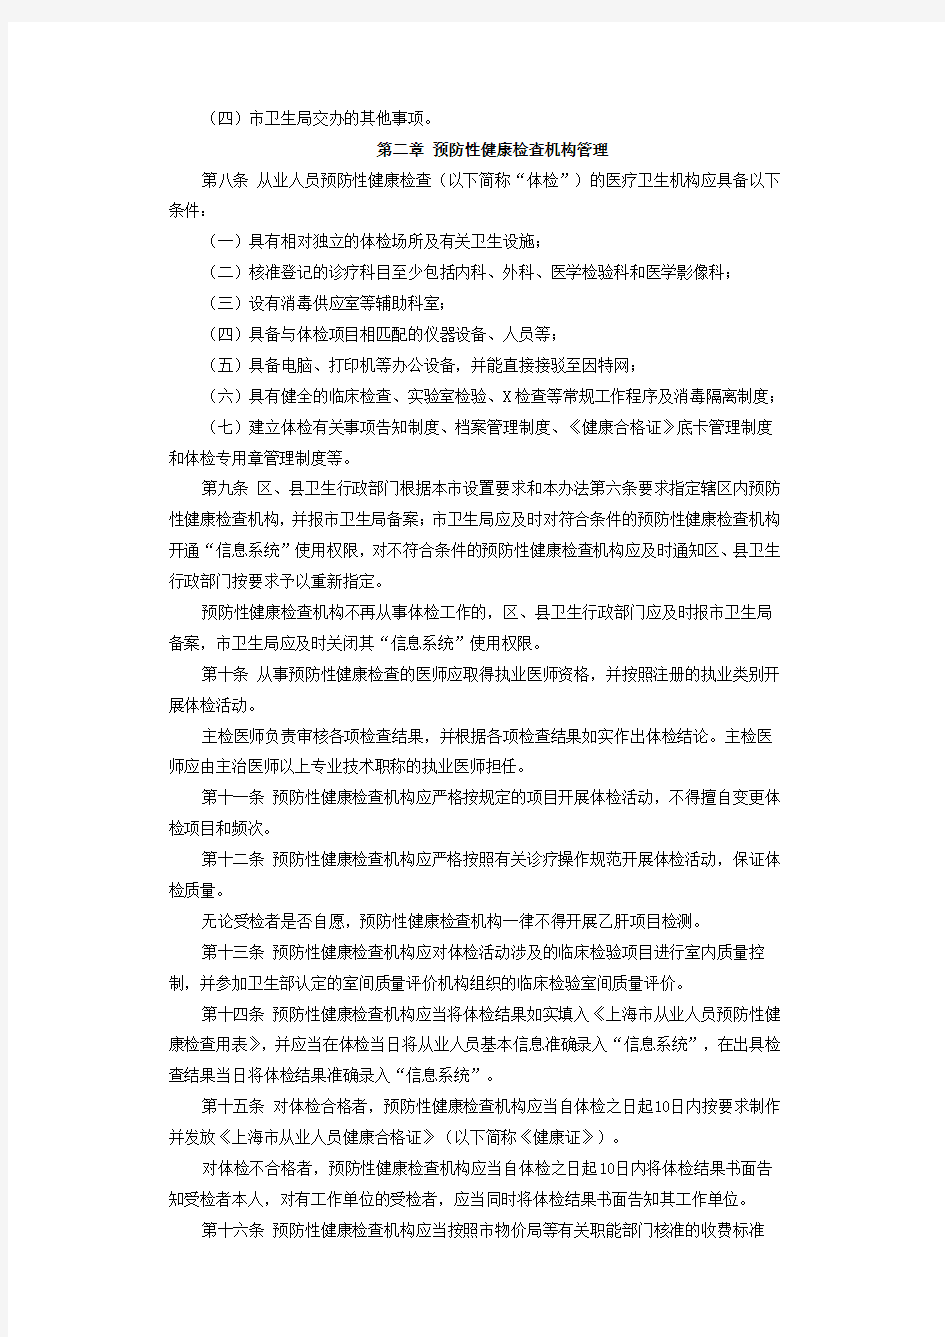 上海市从业人员预防性健康检查机构管理办法新